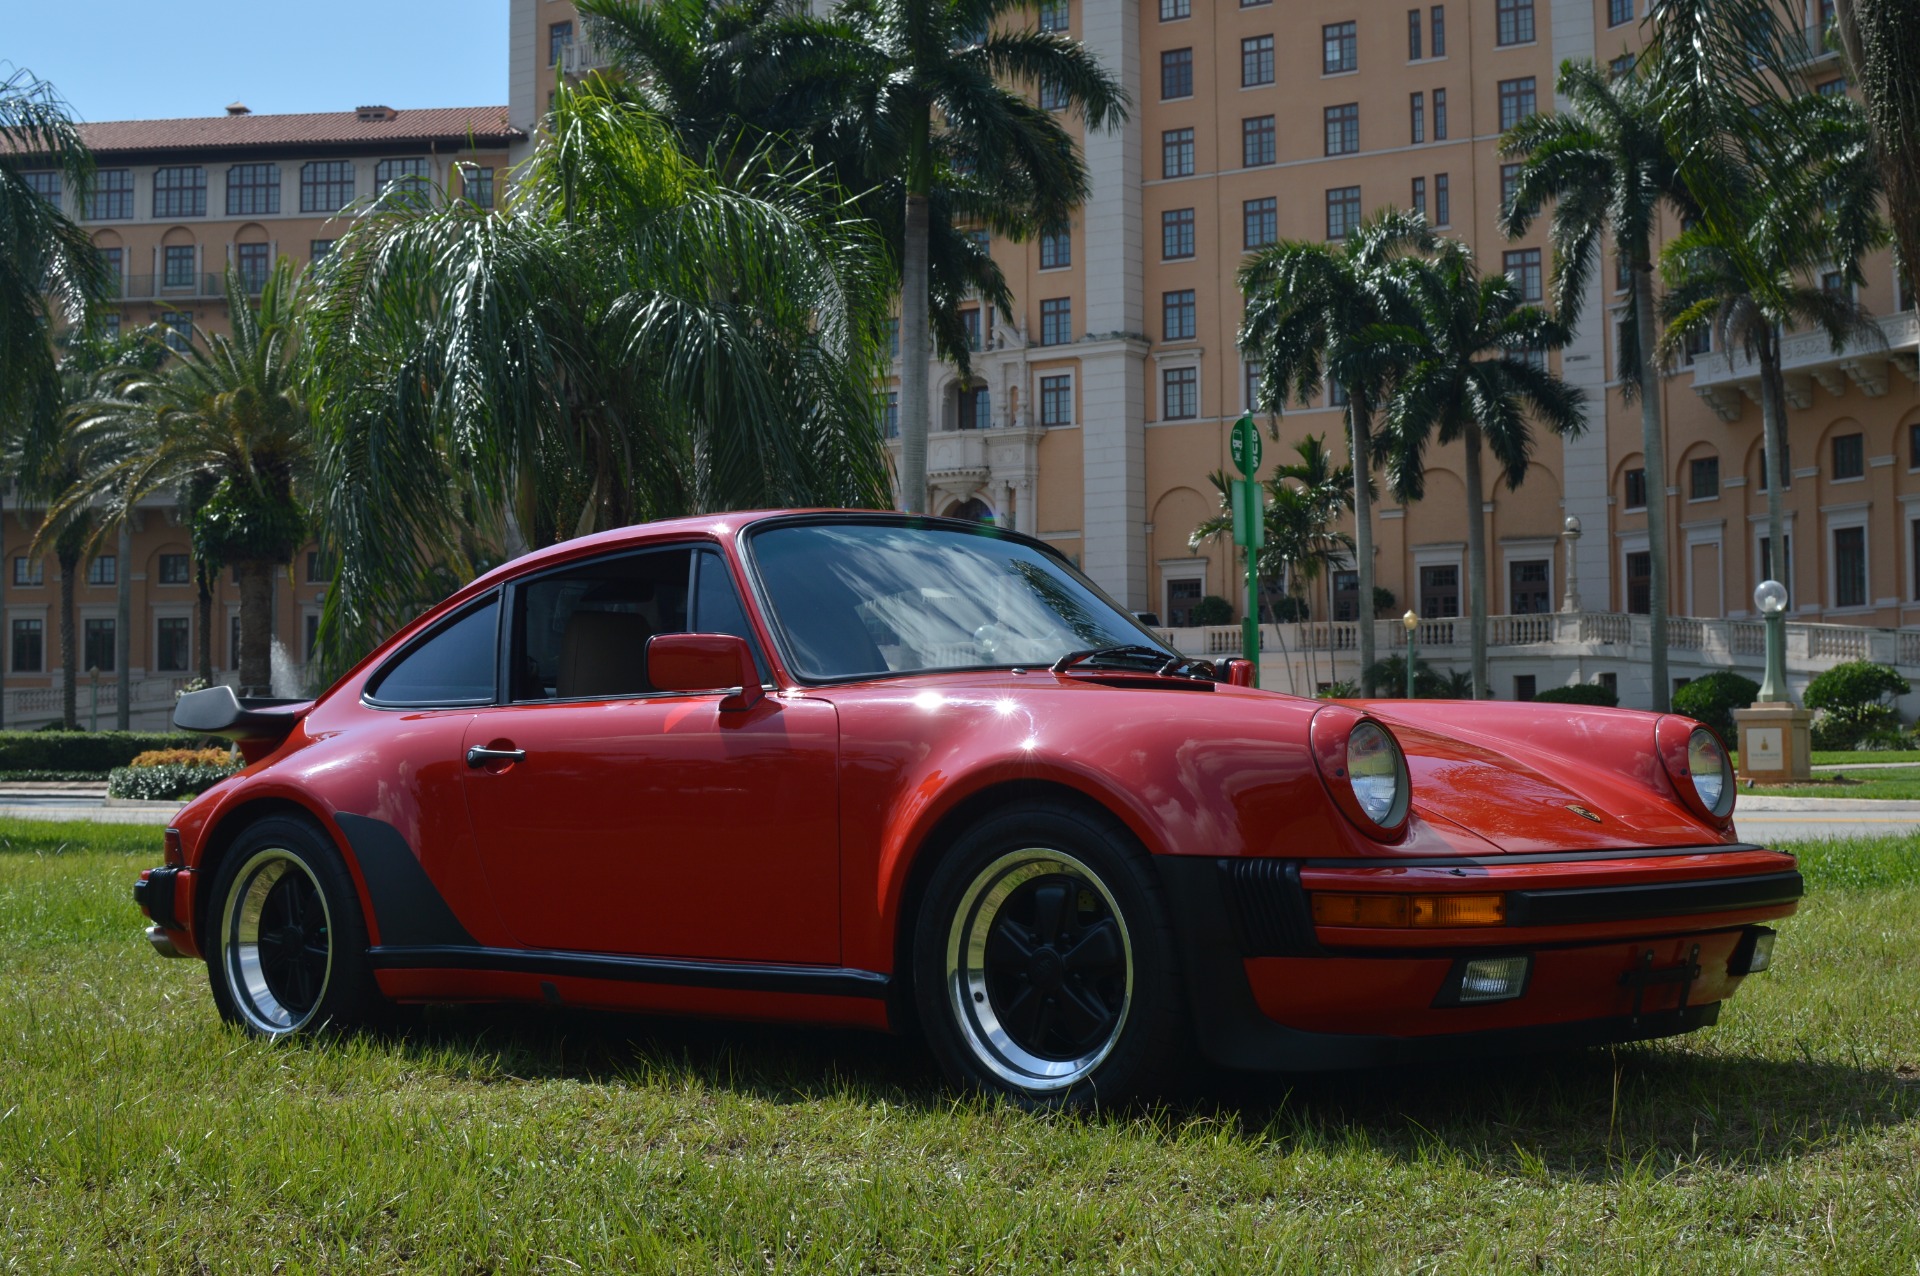 1986 Porsche 911 17500000 For Sale In Miami Fl 33146